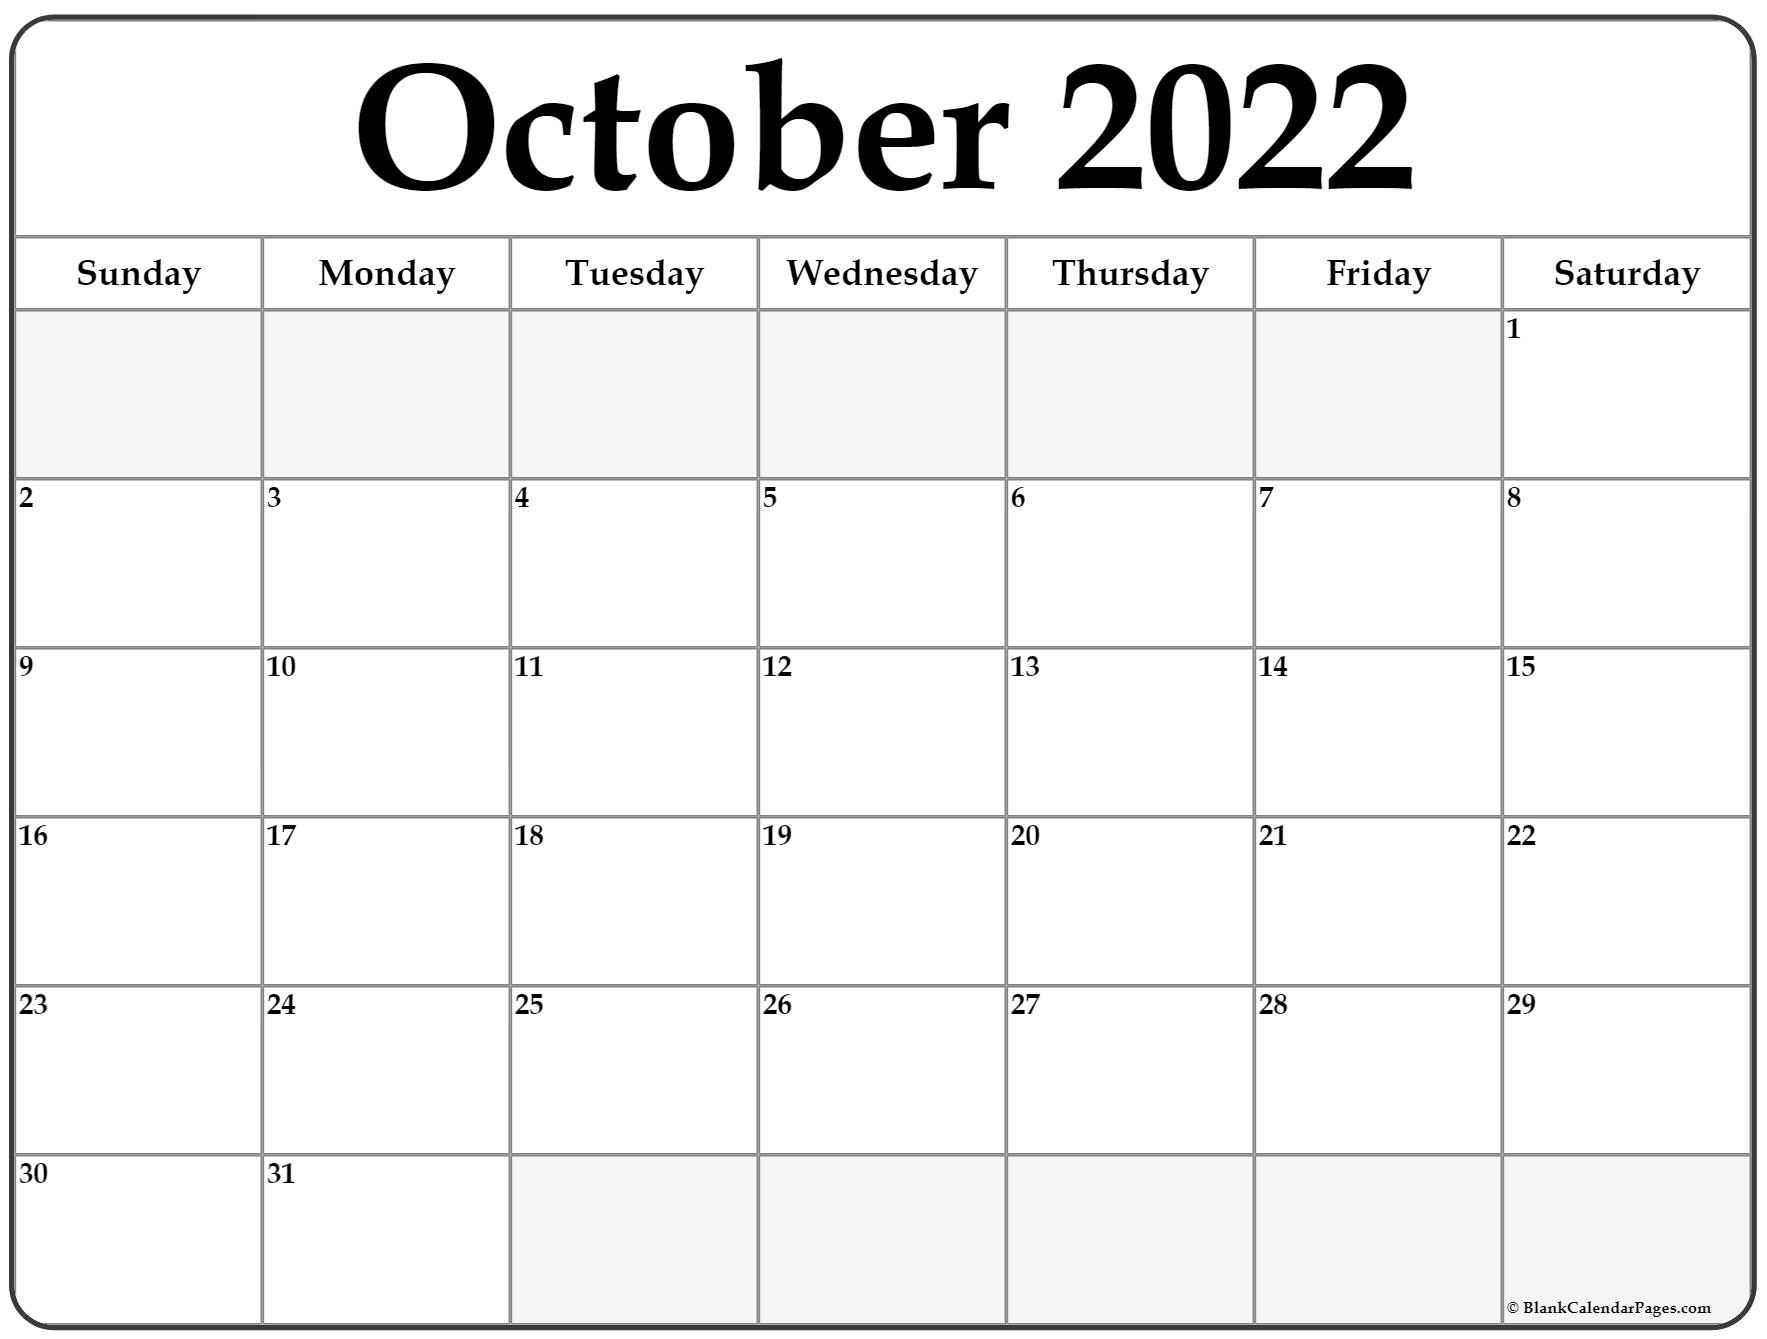 October 2022 Calendar | Free Printable Calendar Templates